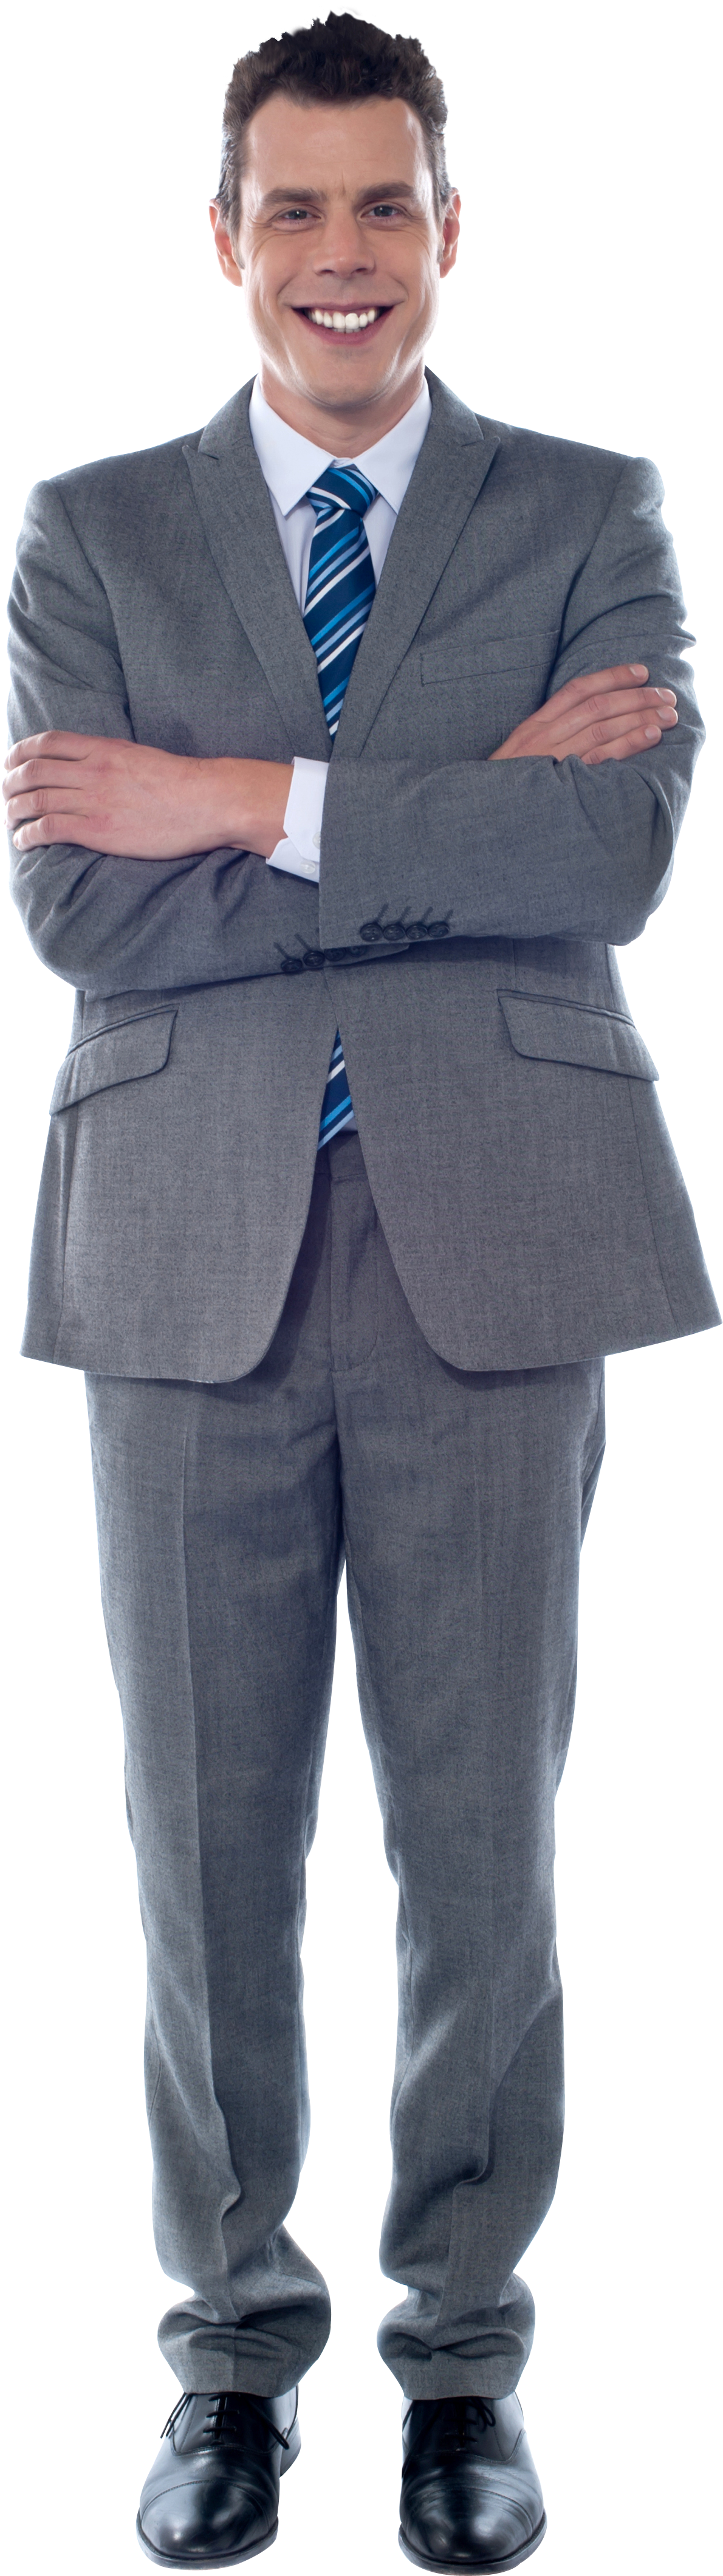 Confident Businessmanin Grey Suit.png PNG image